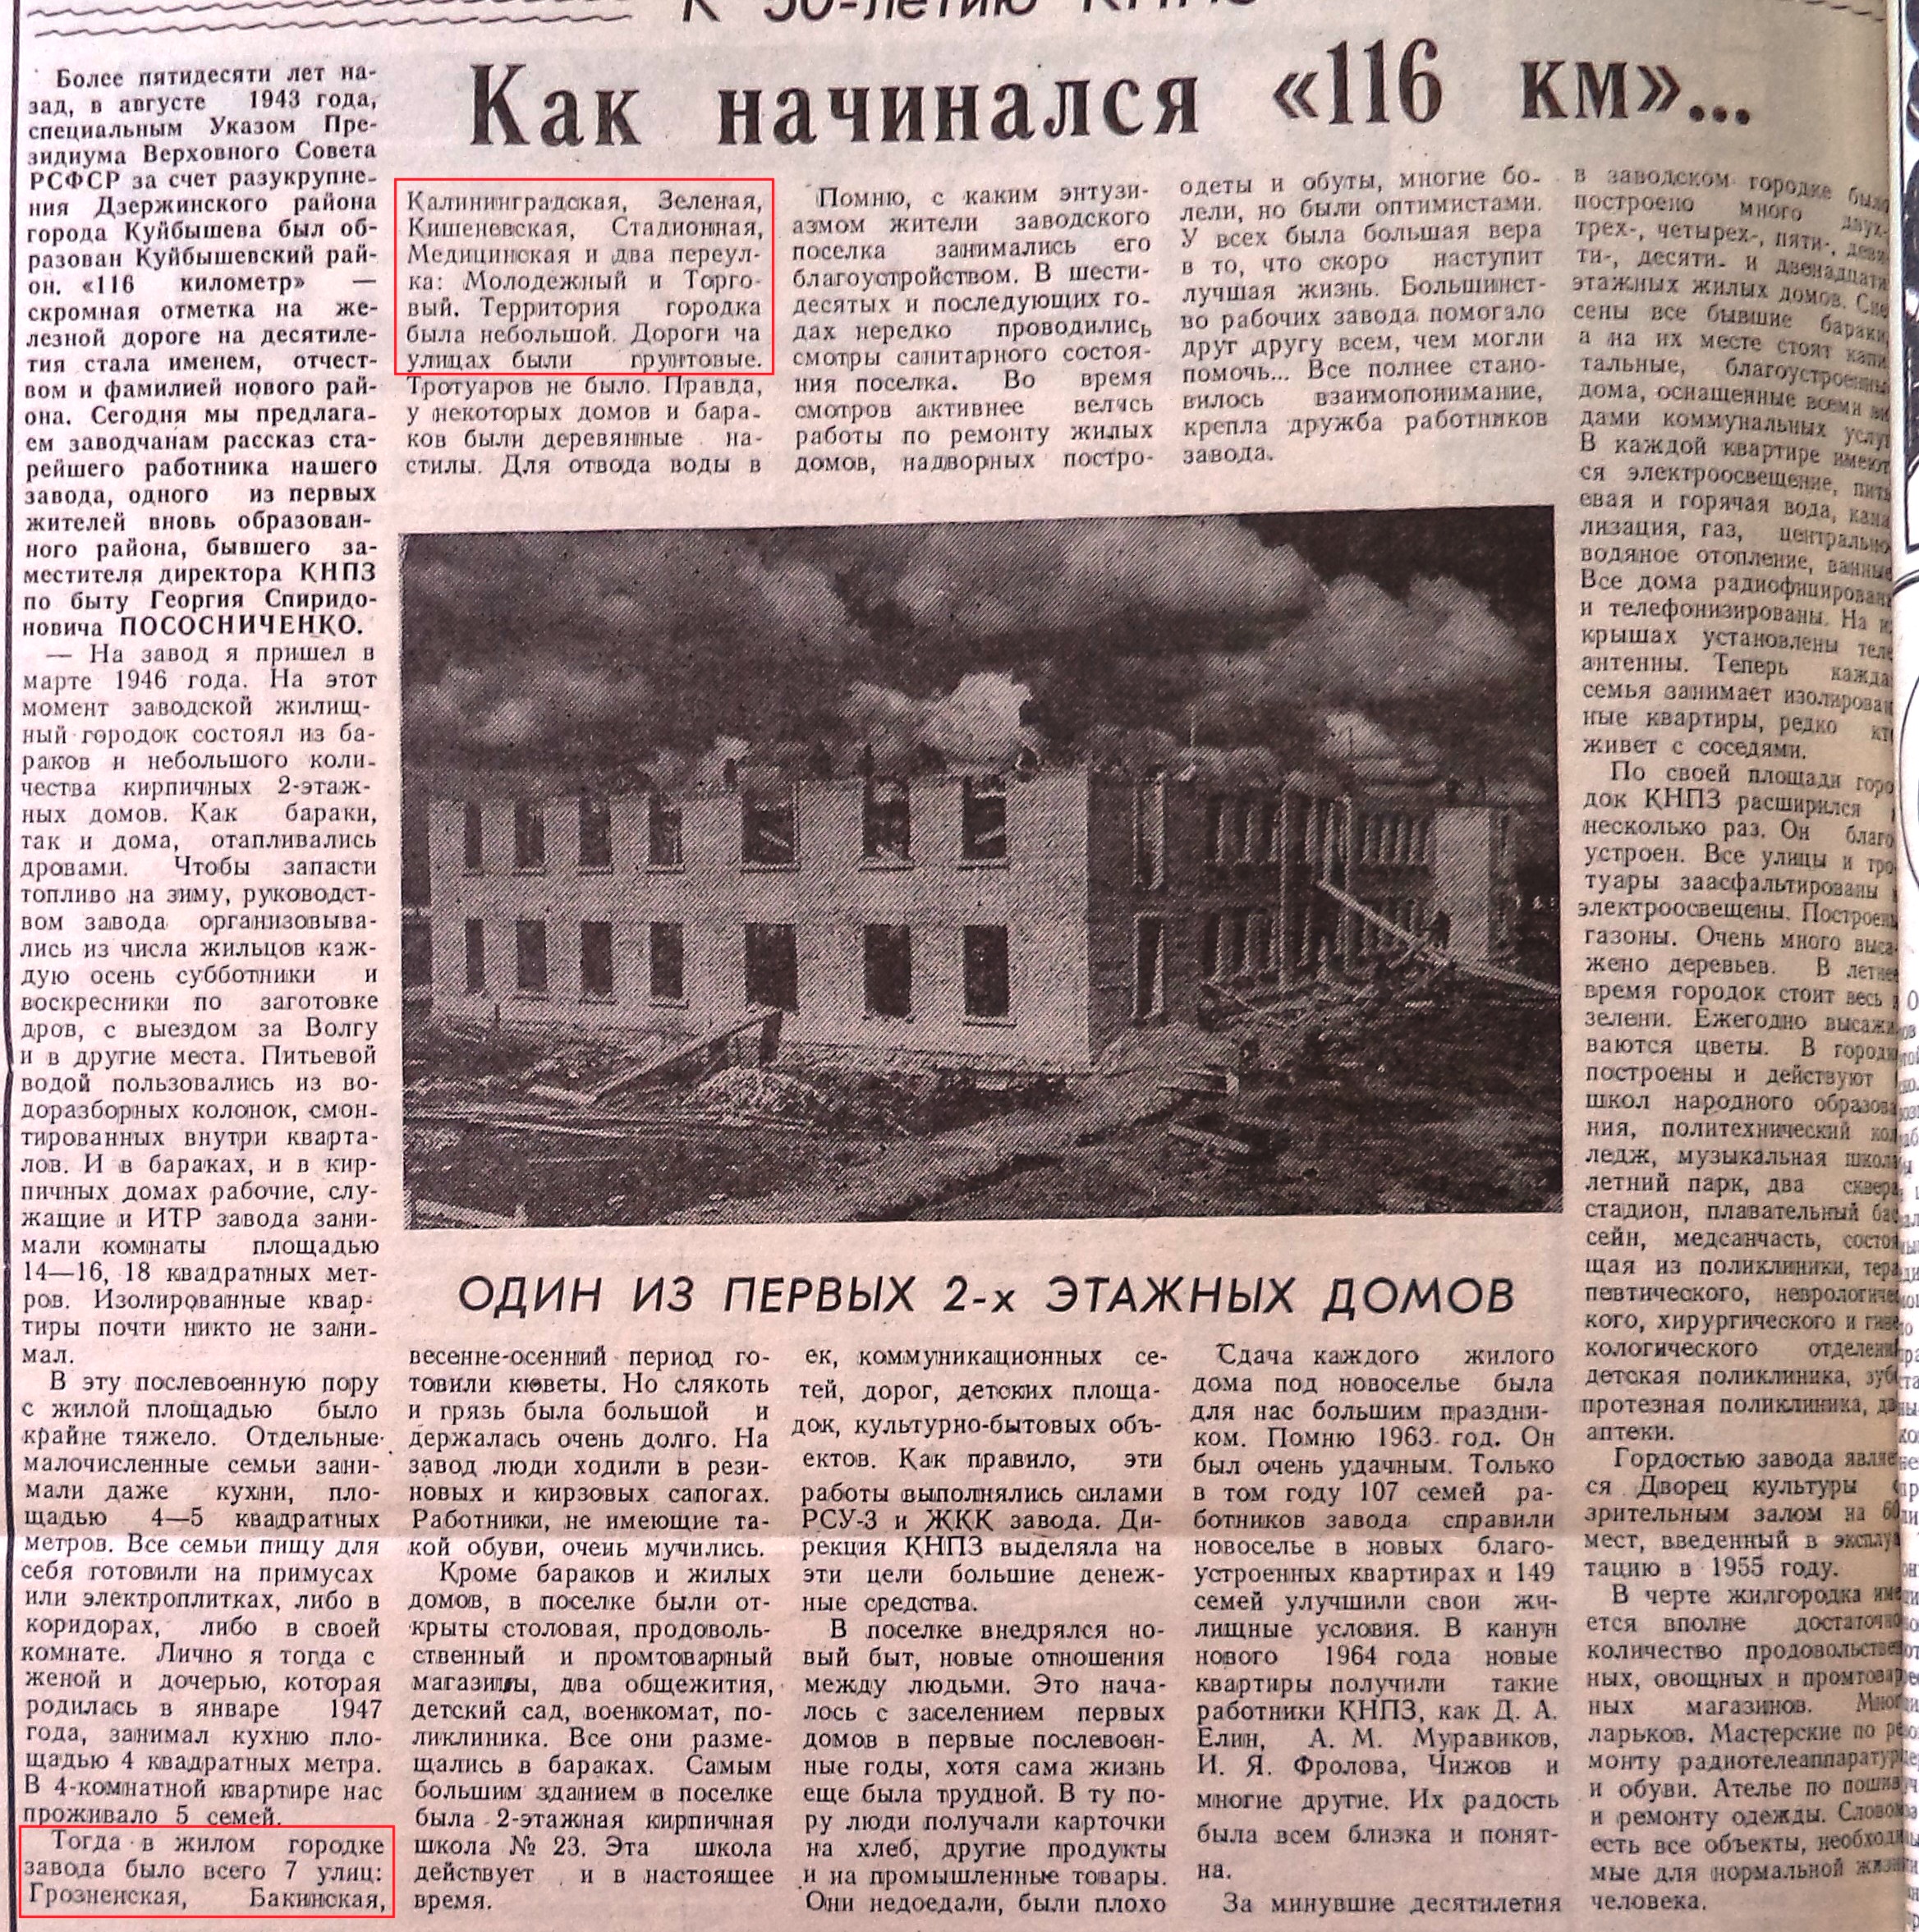 Медицинская-ФОТО-02-За Прогресс-1995-16 мая